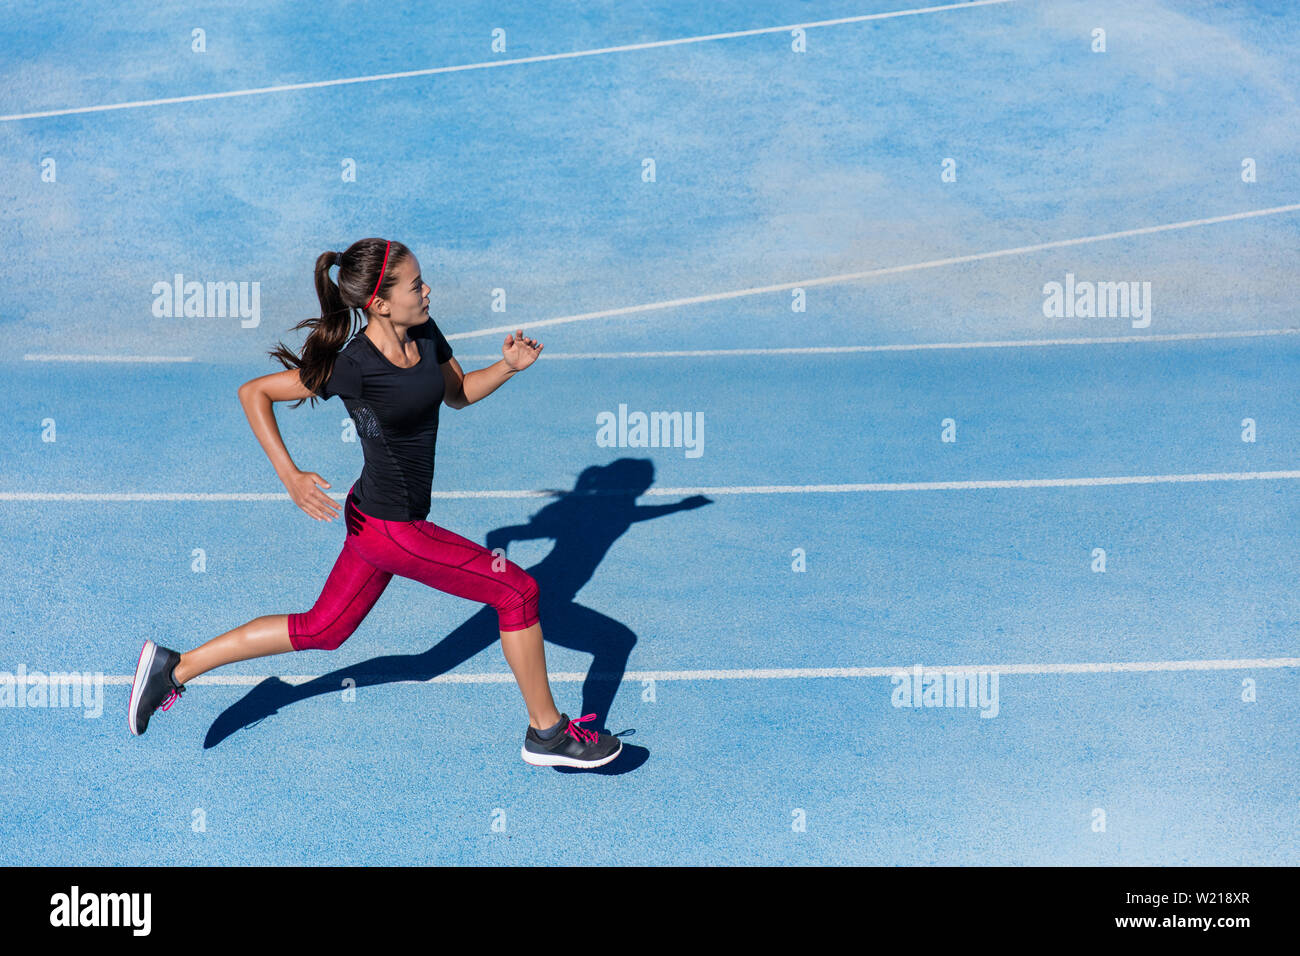 Sportler Läufer laufen auf der Leichtathletikbahn training Ihr cardio.  Jogger Frau joggen am schnellen Tempo für Wettbewerb Rennen auf Blau Spur  am Außenpool im Sommer Stadion das Tragen der roten Capri Strumpfhosen